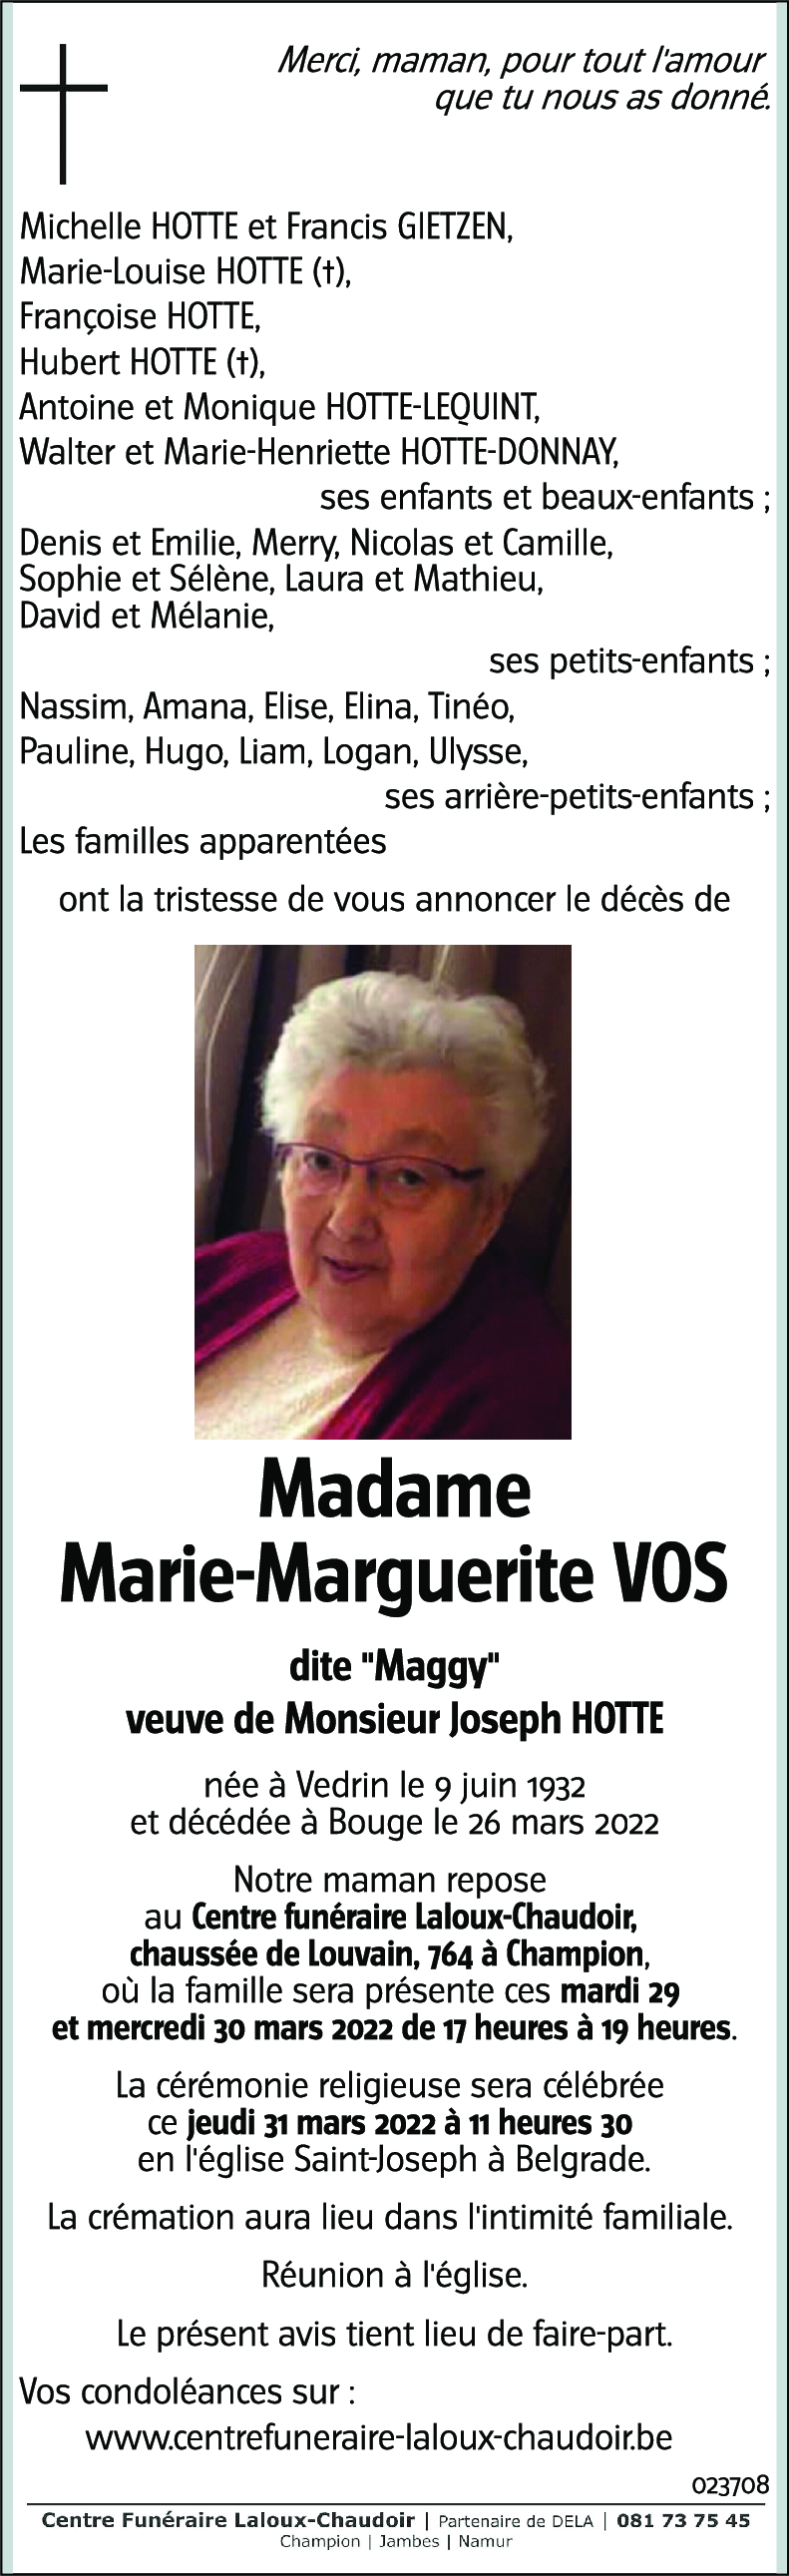 Marie-Marguerite VOS